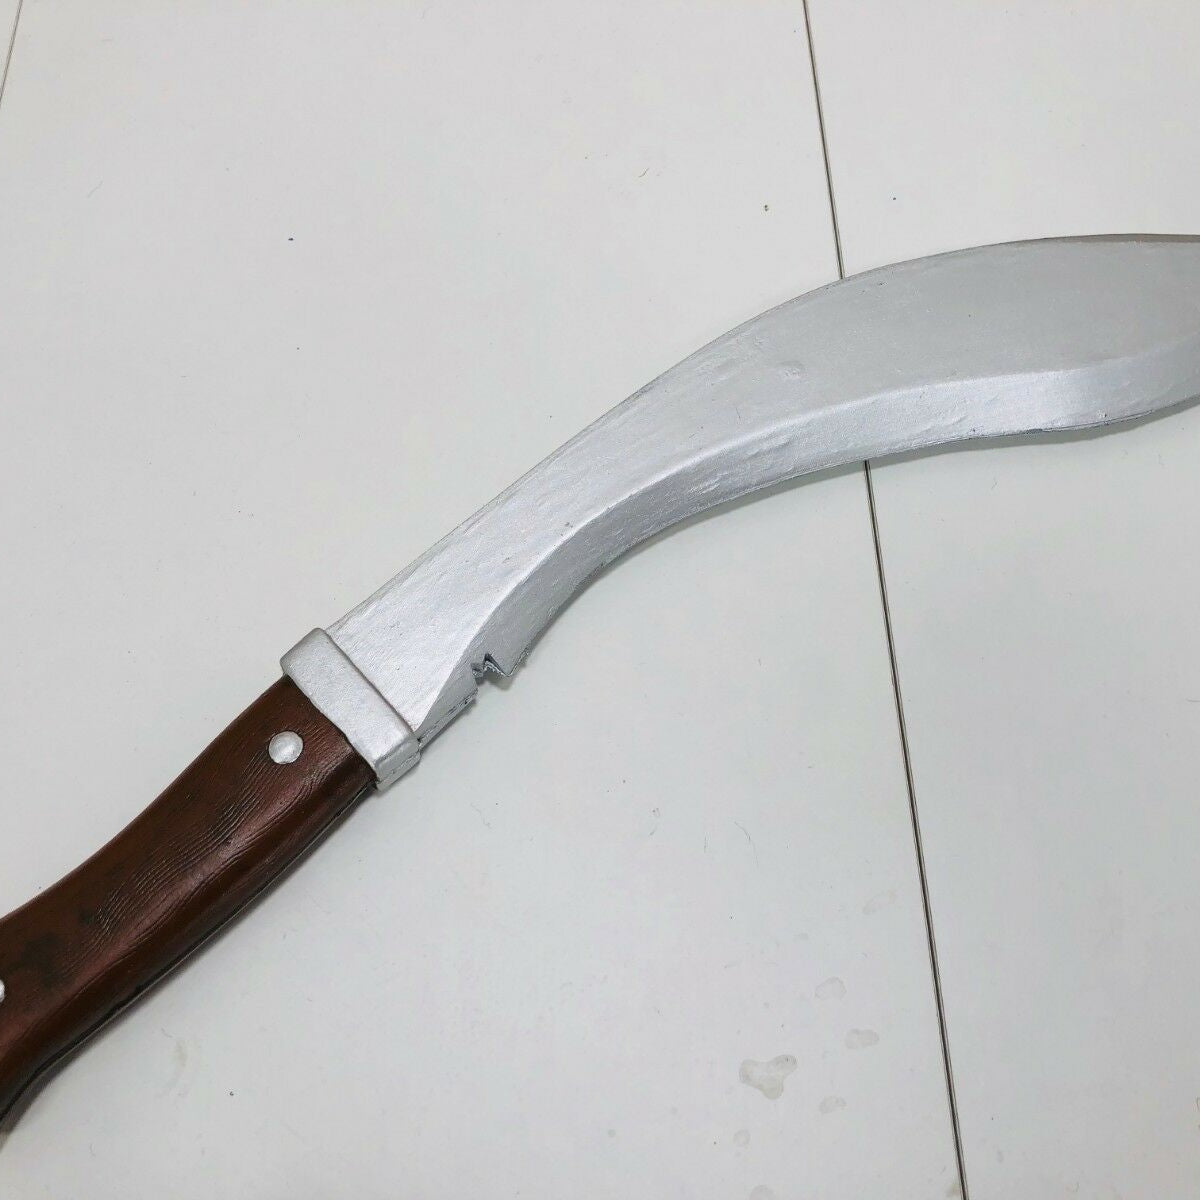 Gurkha Kukri Army Knife.